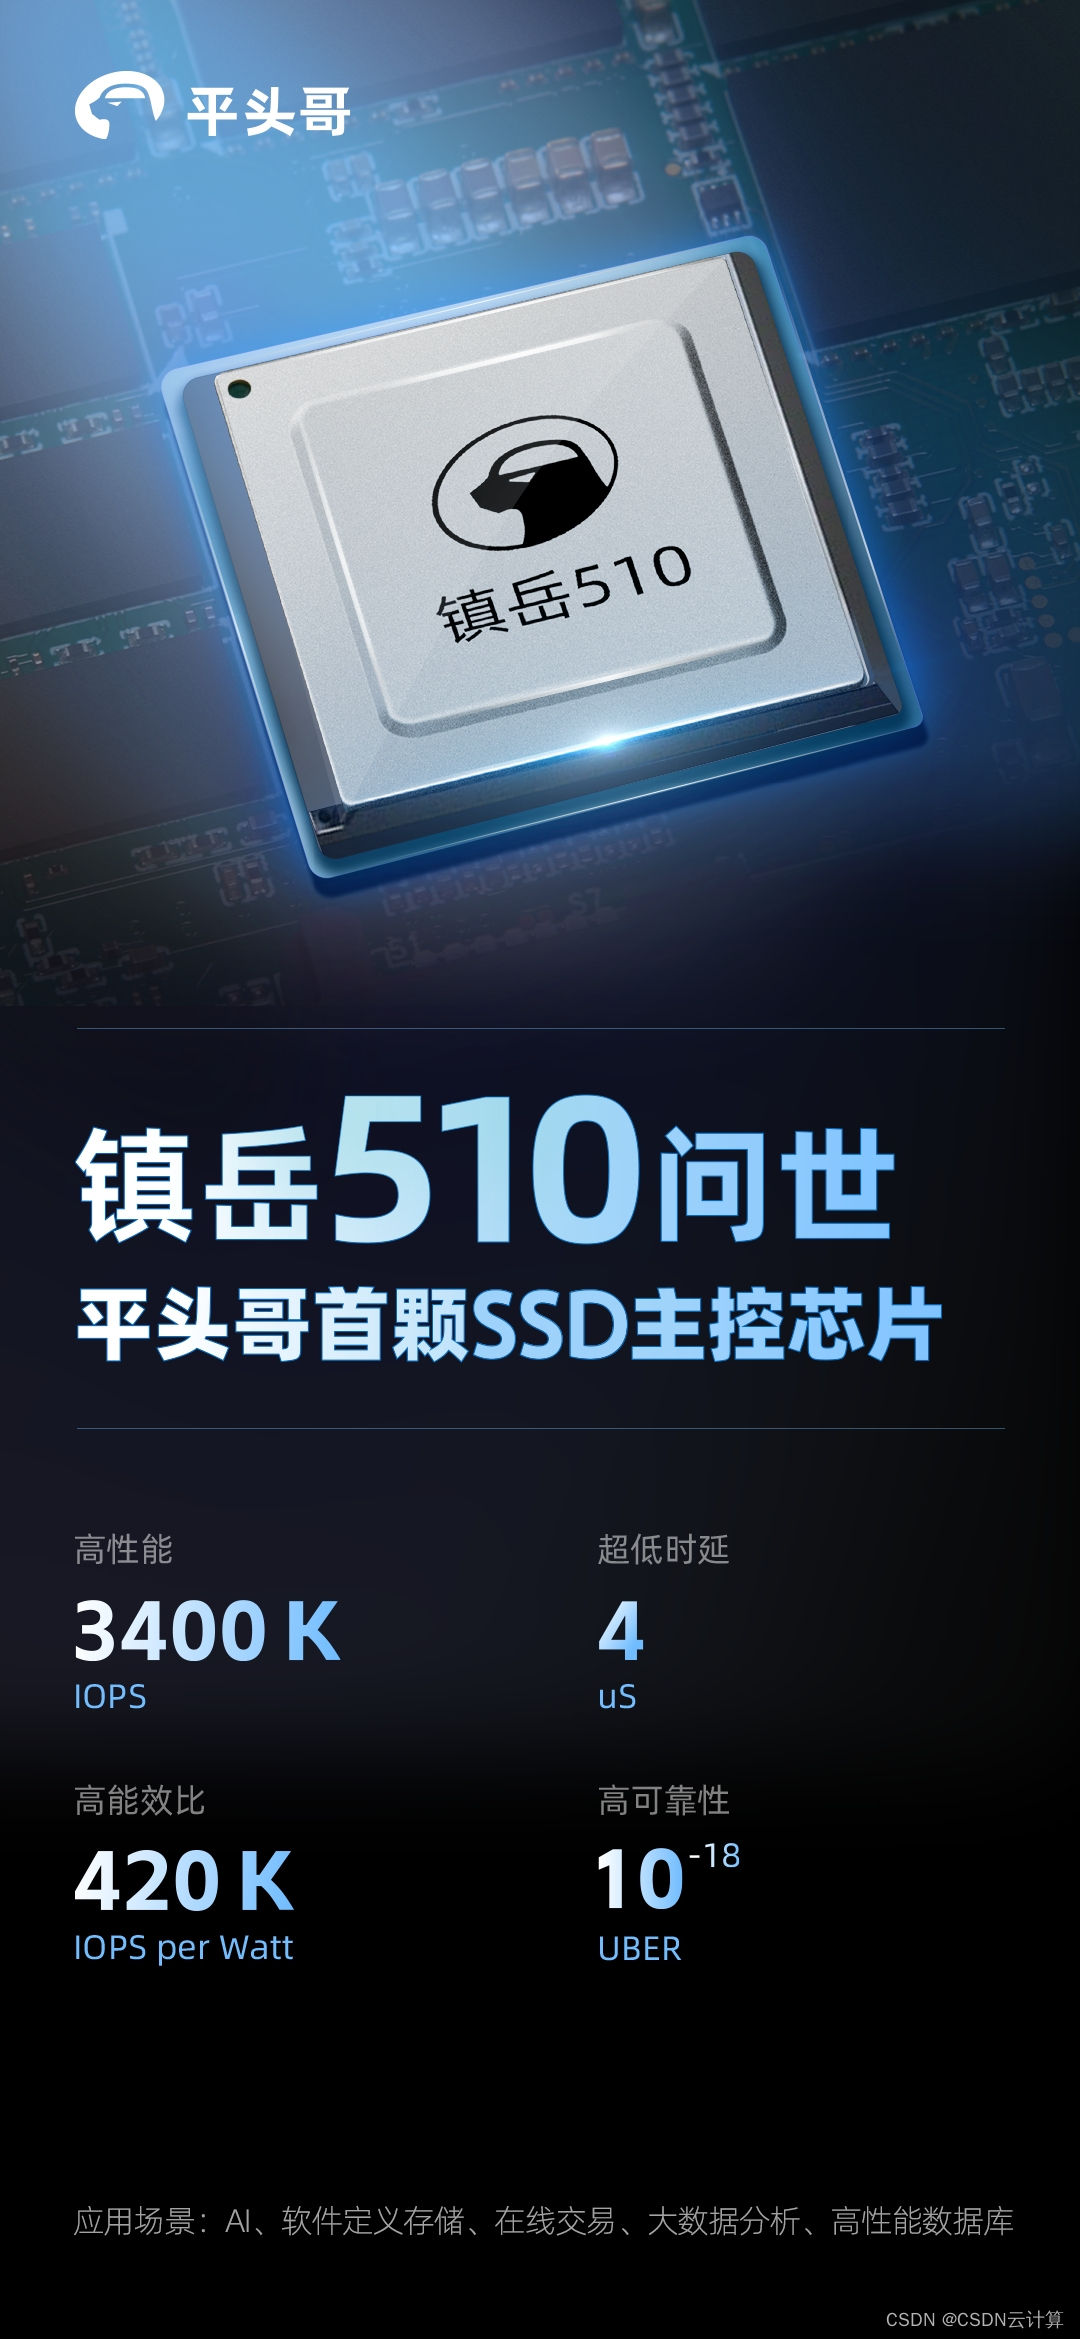 遥遥领先一个量级，平头哥发布首颗SSD主控芯片镇岳510